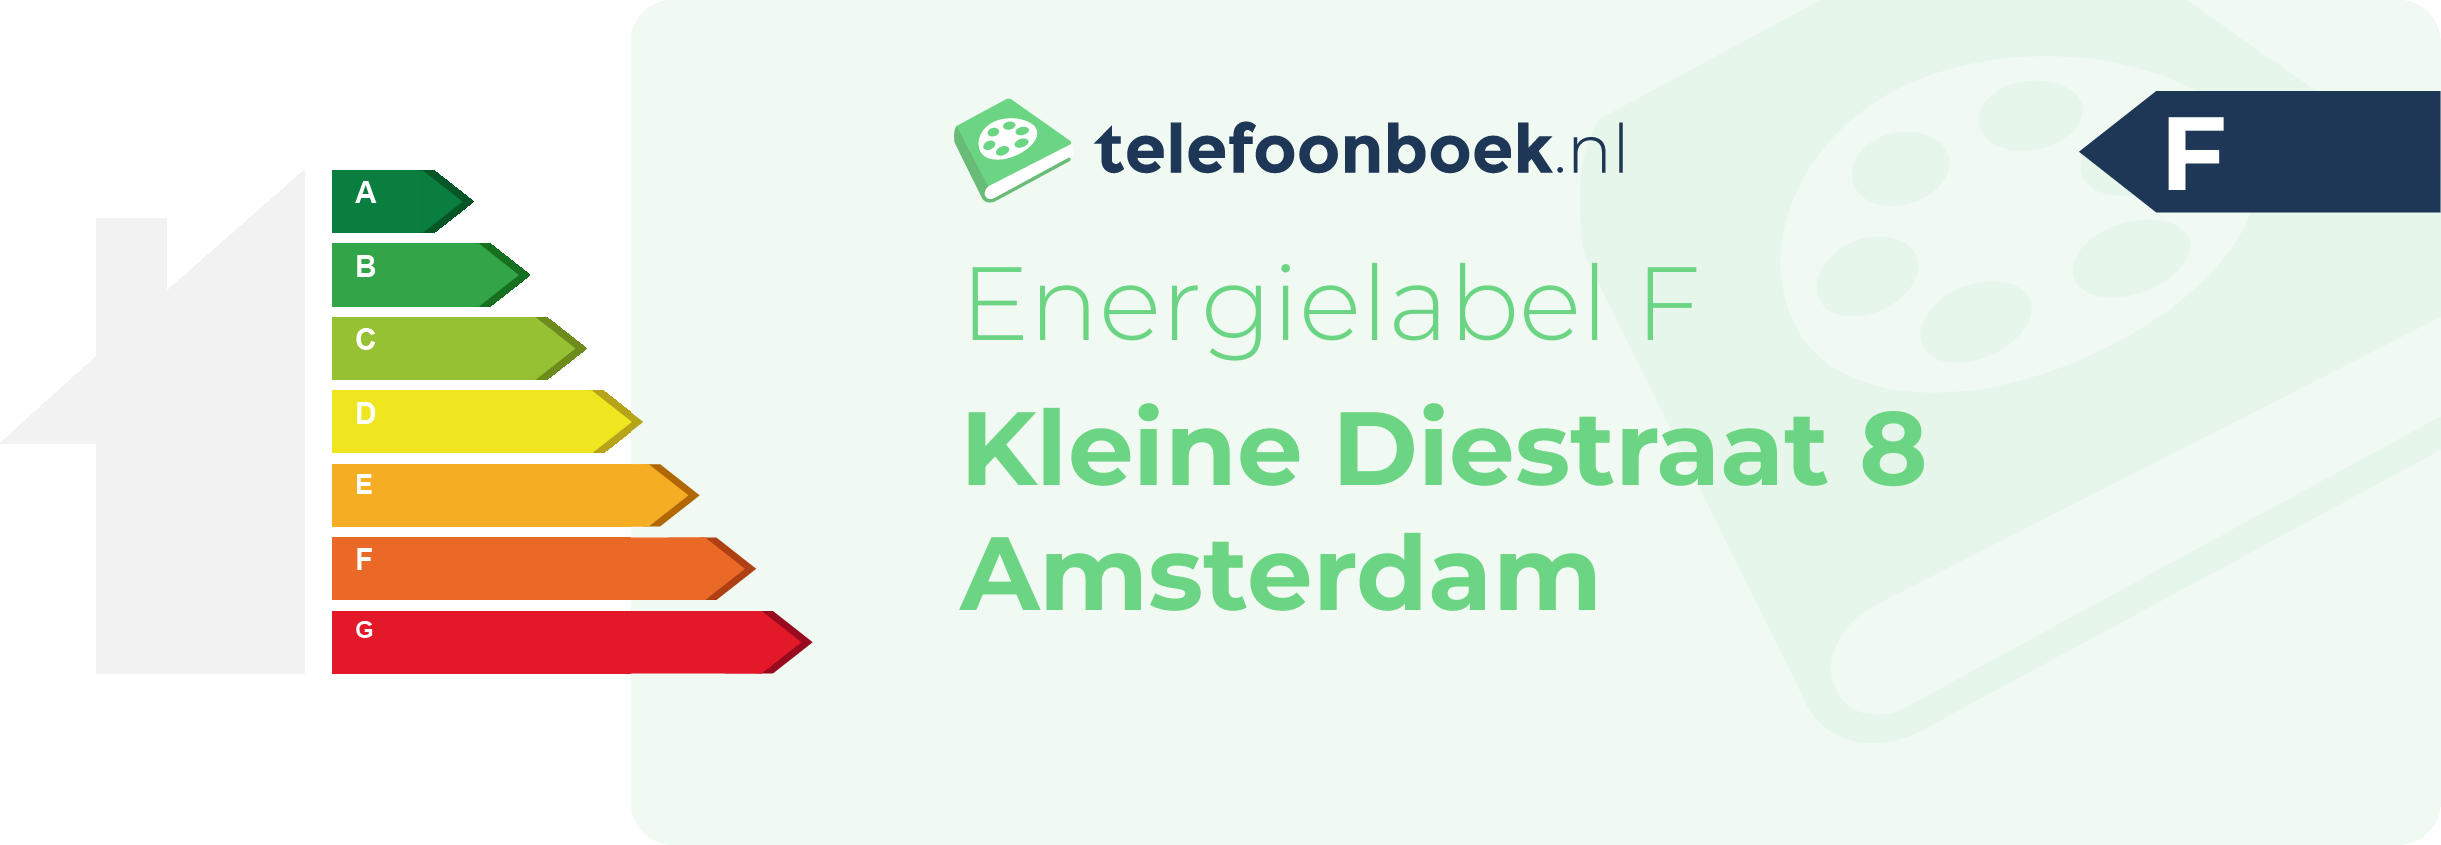 Energielabel Kleine Diestraat 8 Amsterdam